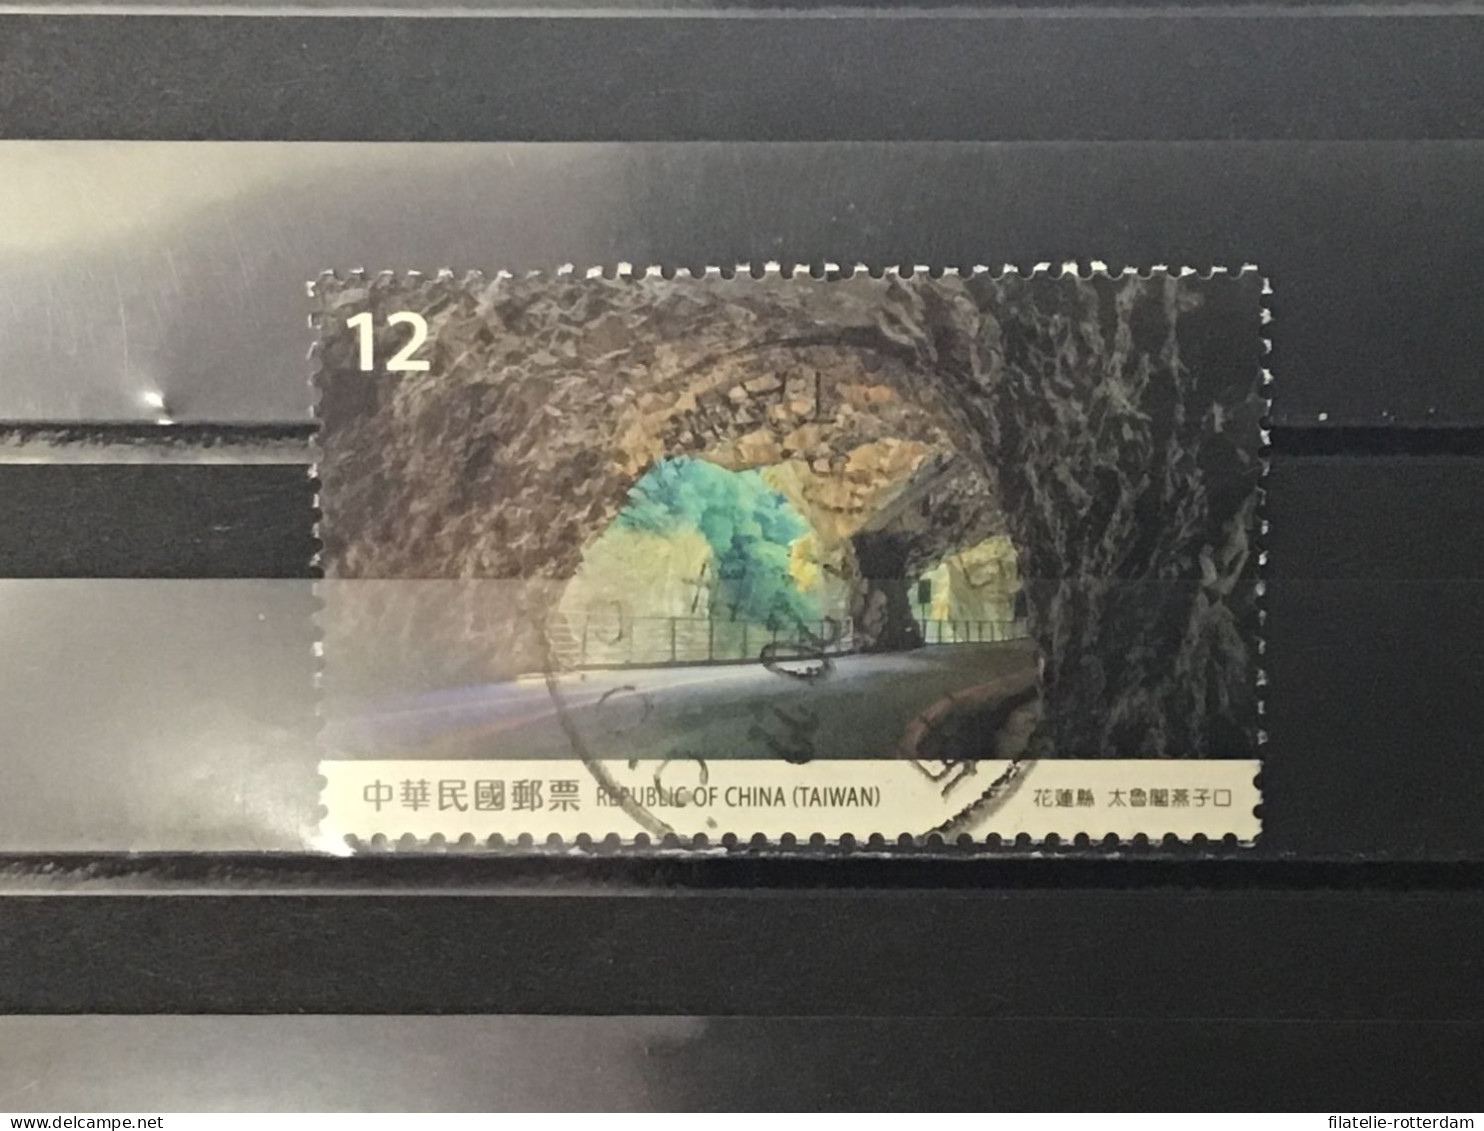 Taiwan - Taiwan Scenery (12) 2019 - Used Stamps